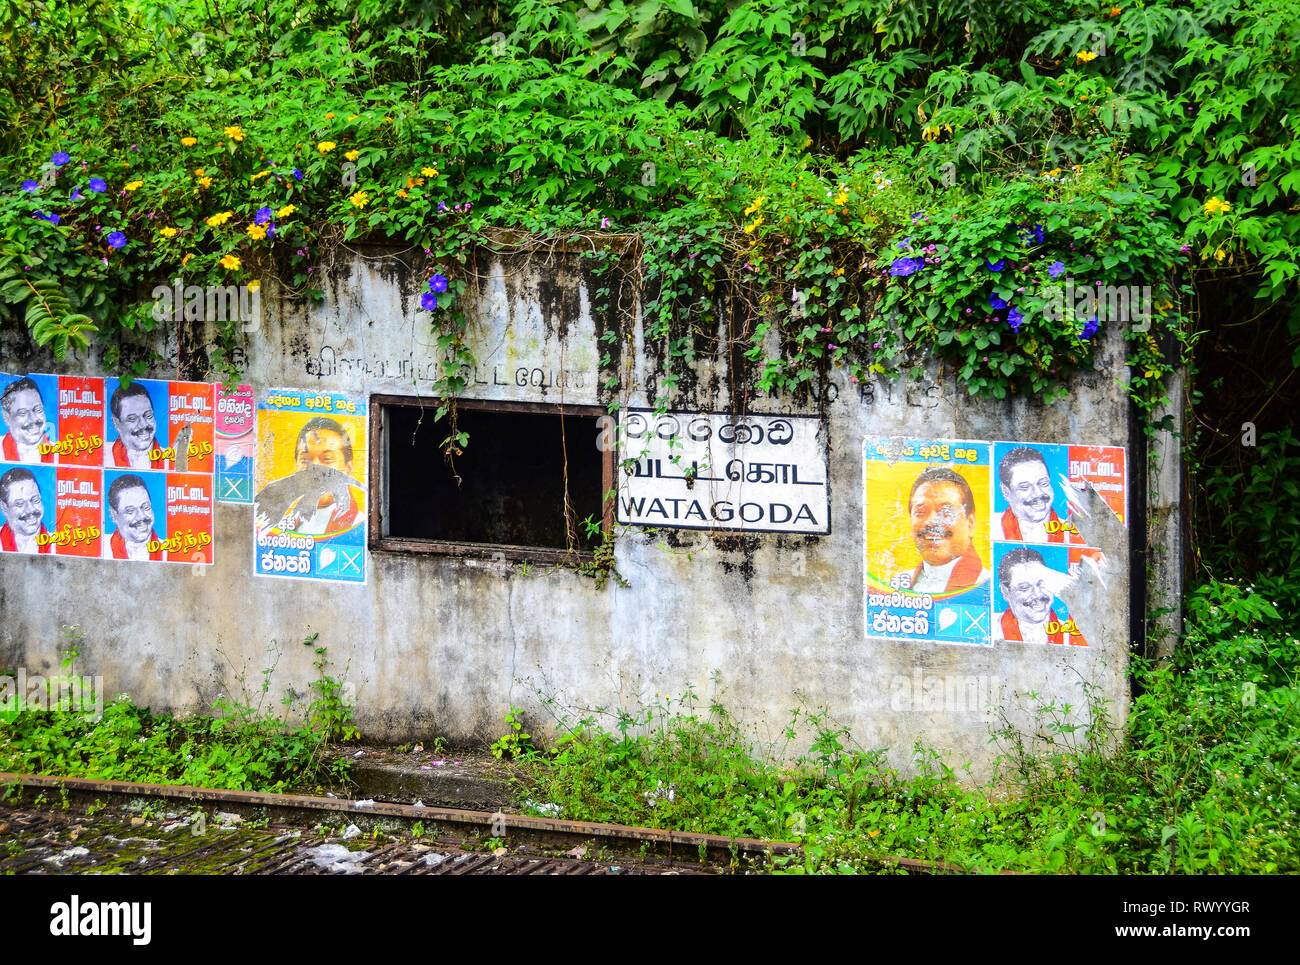 Les affiches politiques sri-lankais et gloire du matin, par la construction de chemins de fer, Watagoda, Sri Lanka Banque D'Images